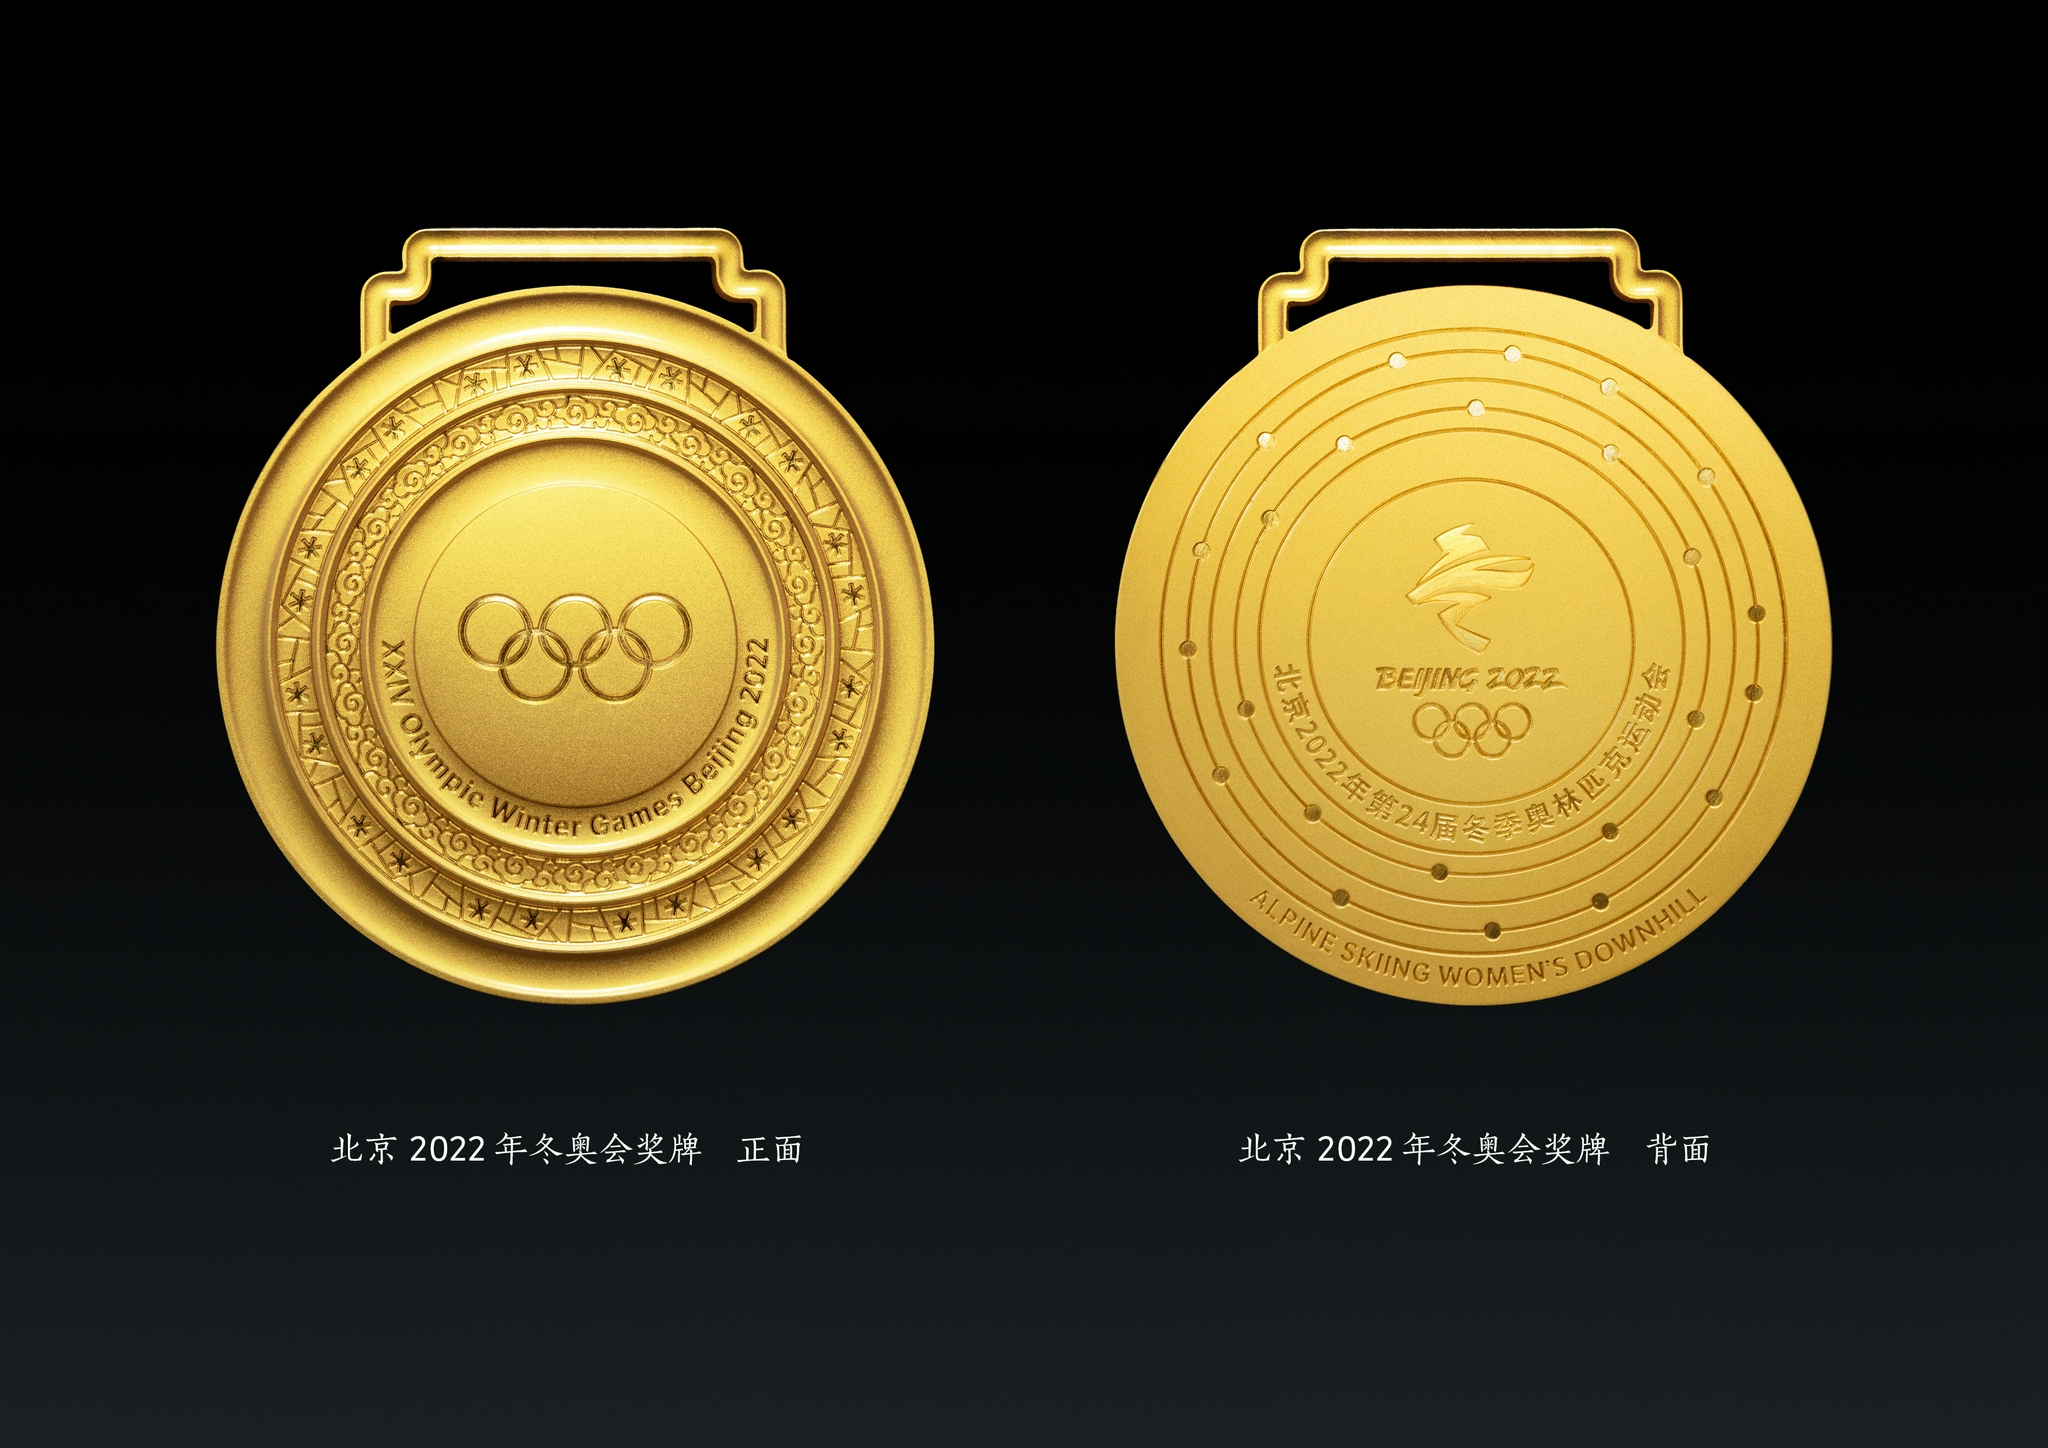 北京2022年冬奥会奖牌正面,背面图